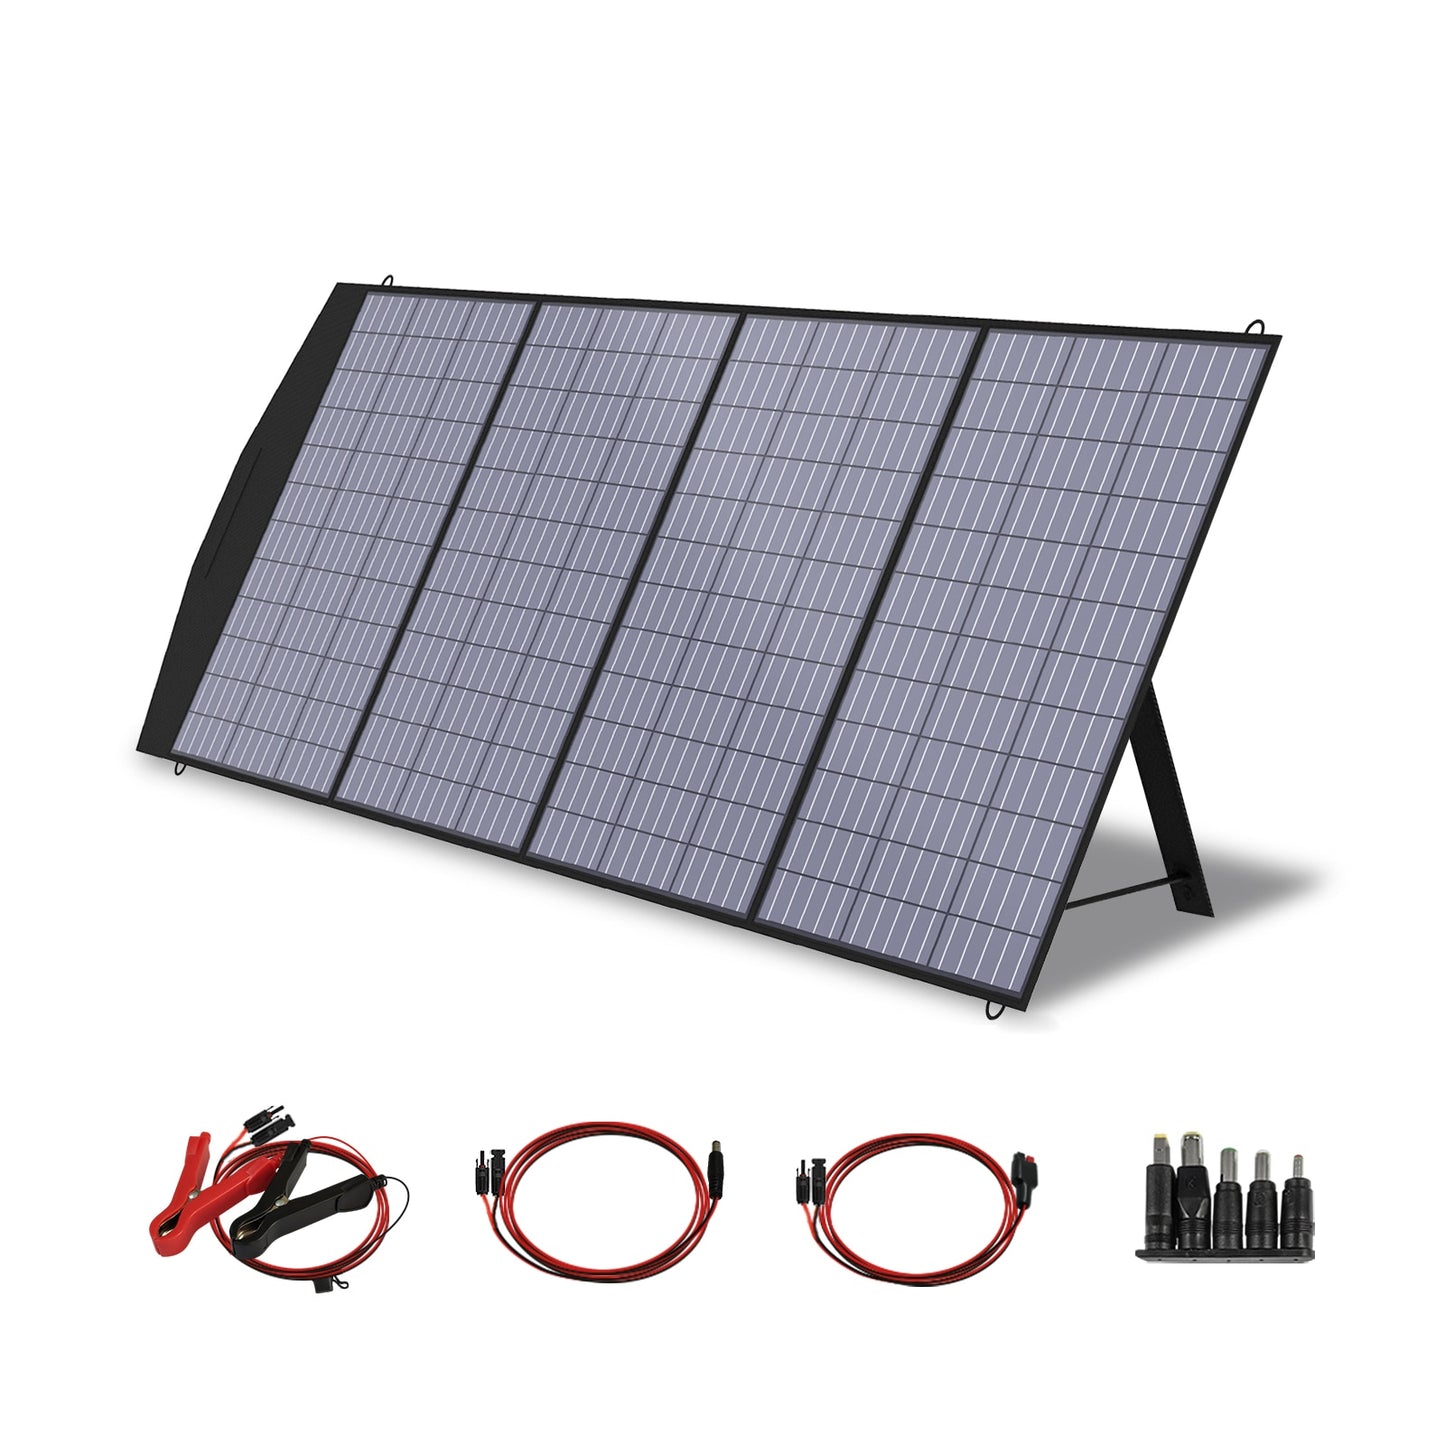 Складная солнечная панель 400 Вт / 200 Вт / 140 Вт / 100 Вт / 60 Вт солнечное зарядное устройство с выходом MC-4 для солнечного генератора электростанции